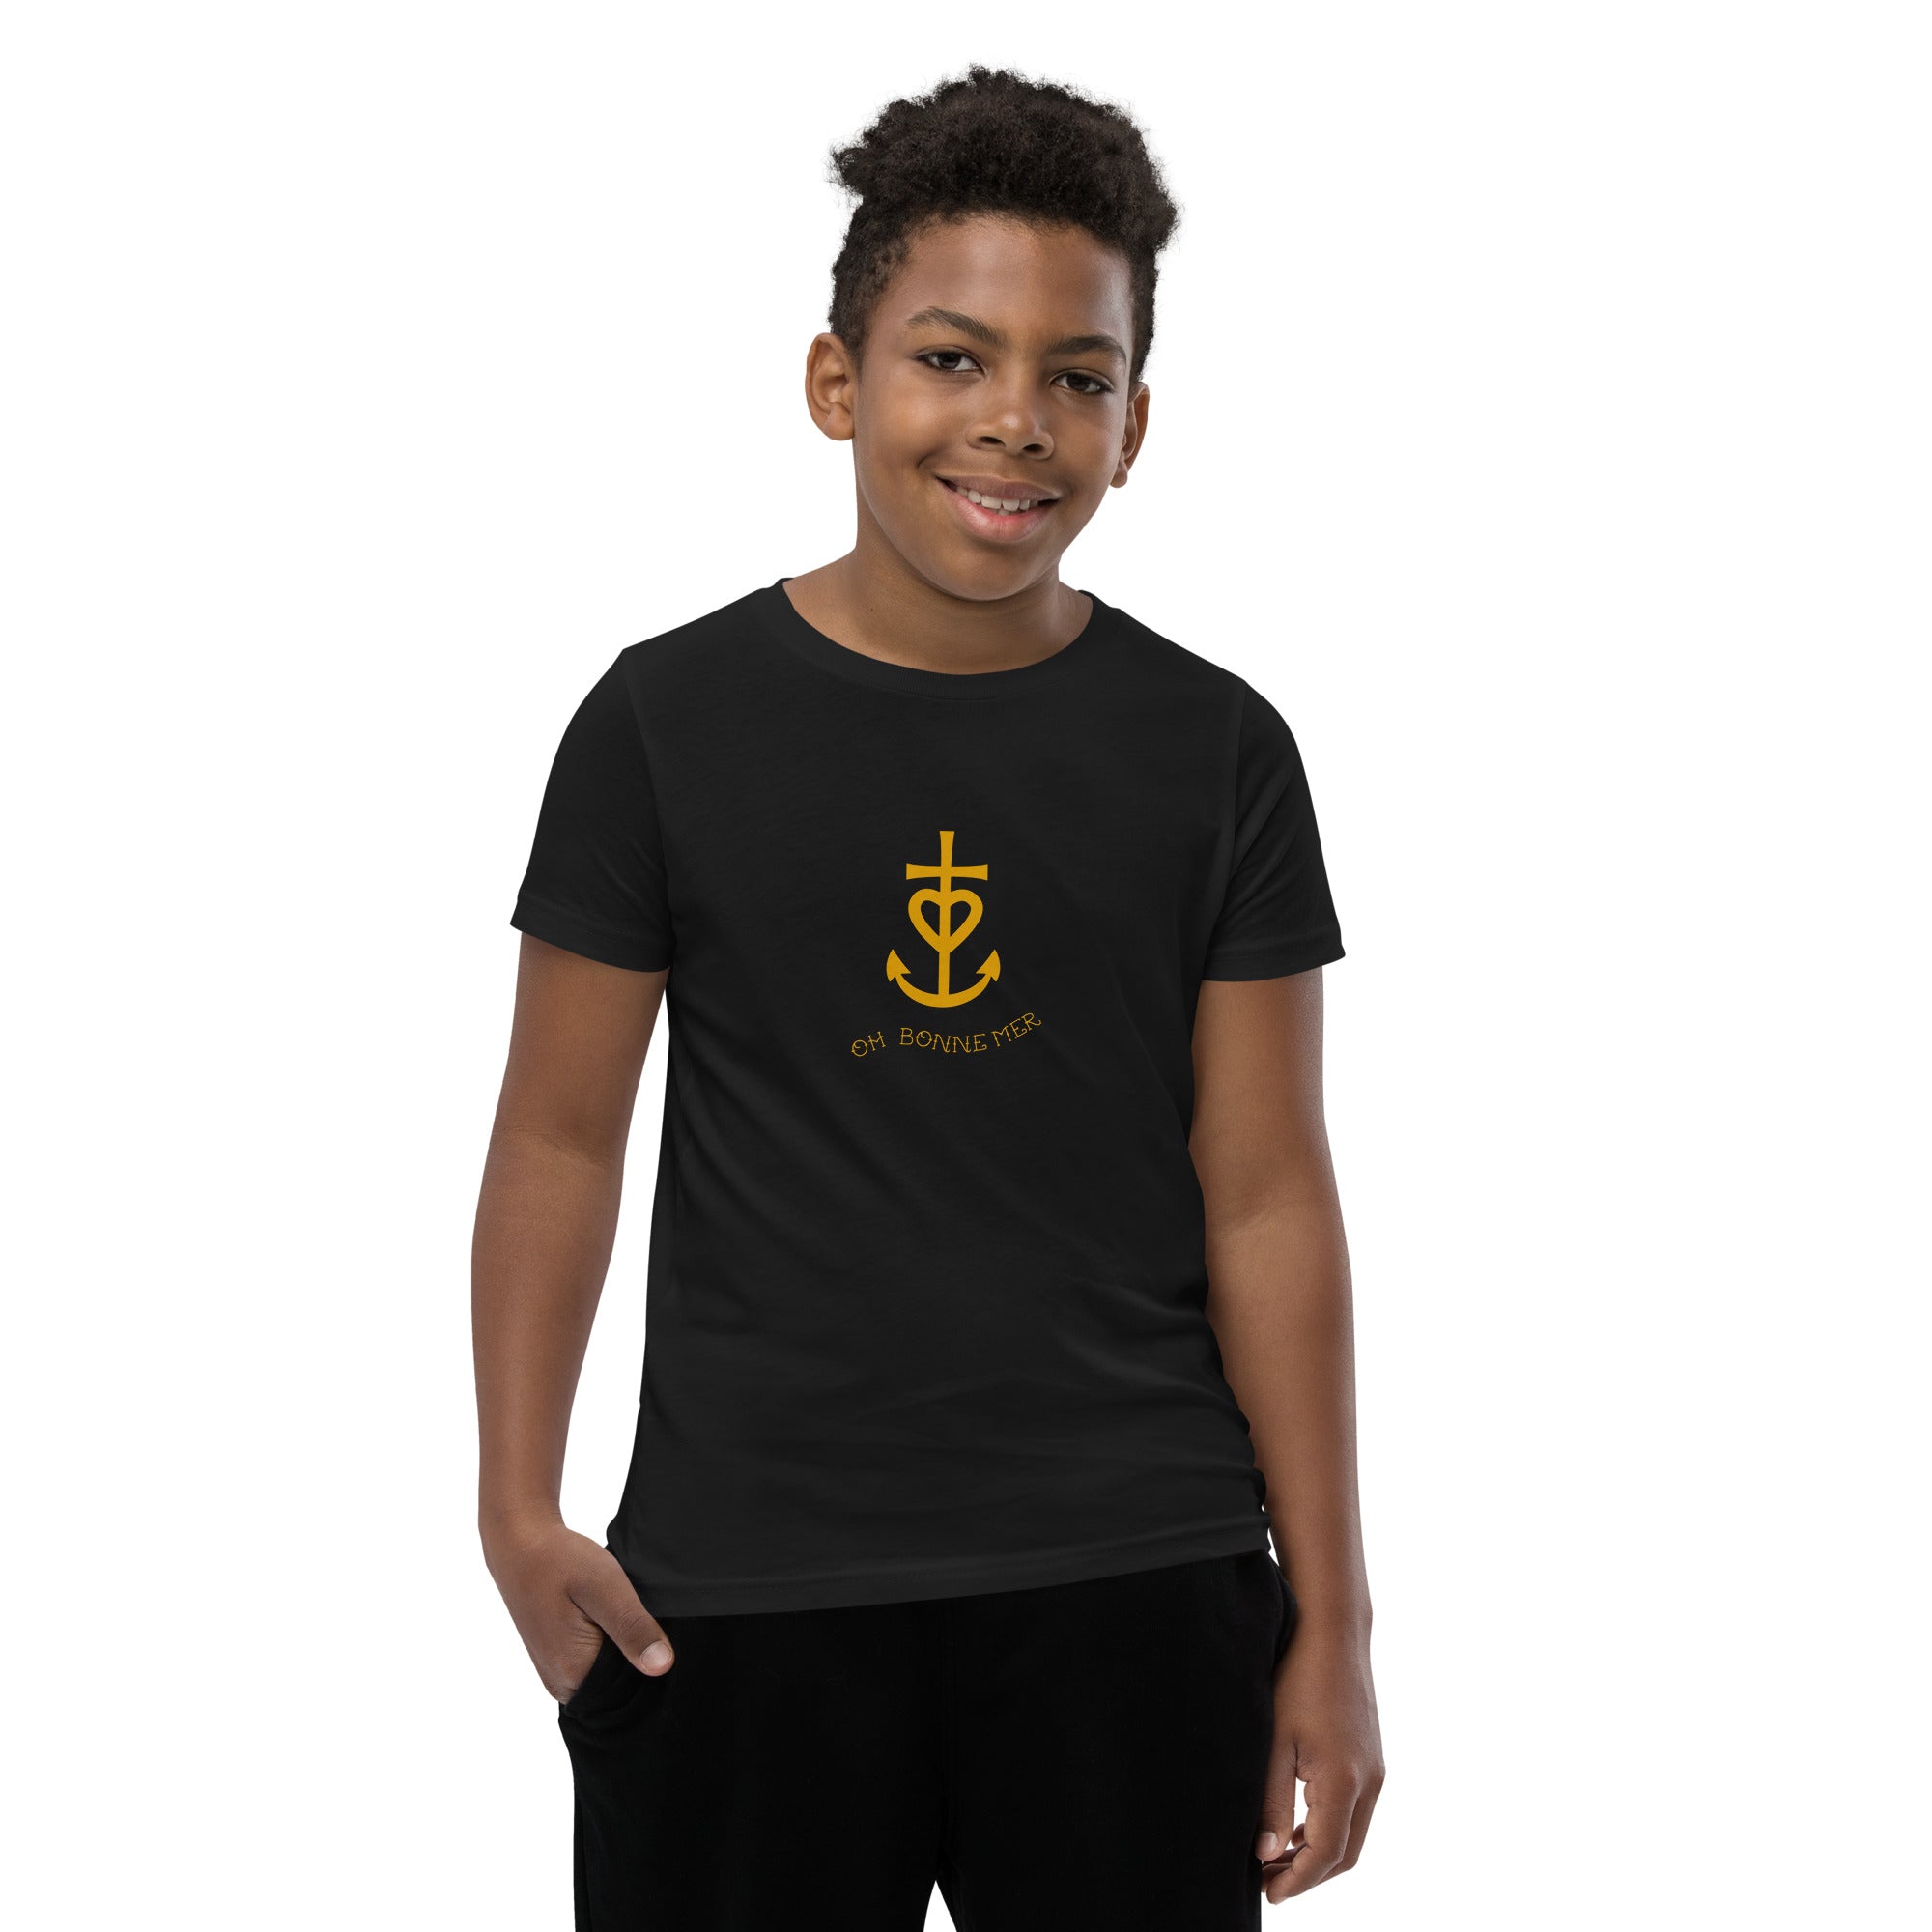 T-shirt pour adolescent Croix de Camargue dorée avec texte Oh Bonne mer